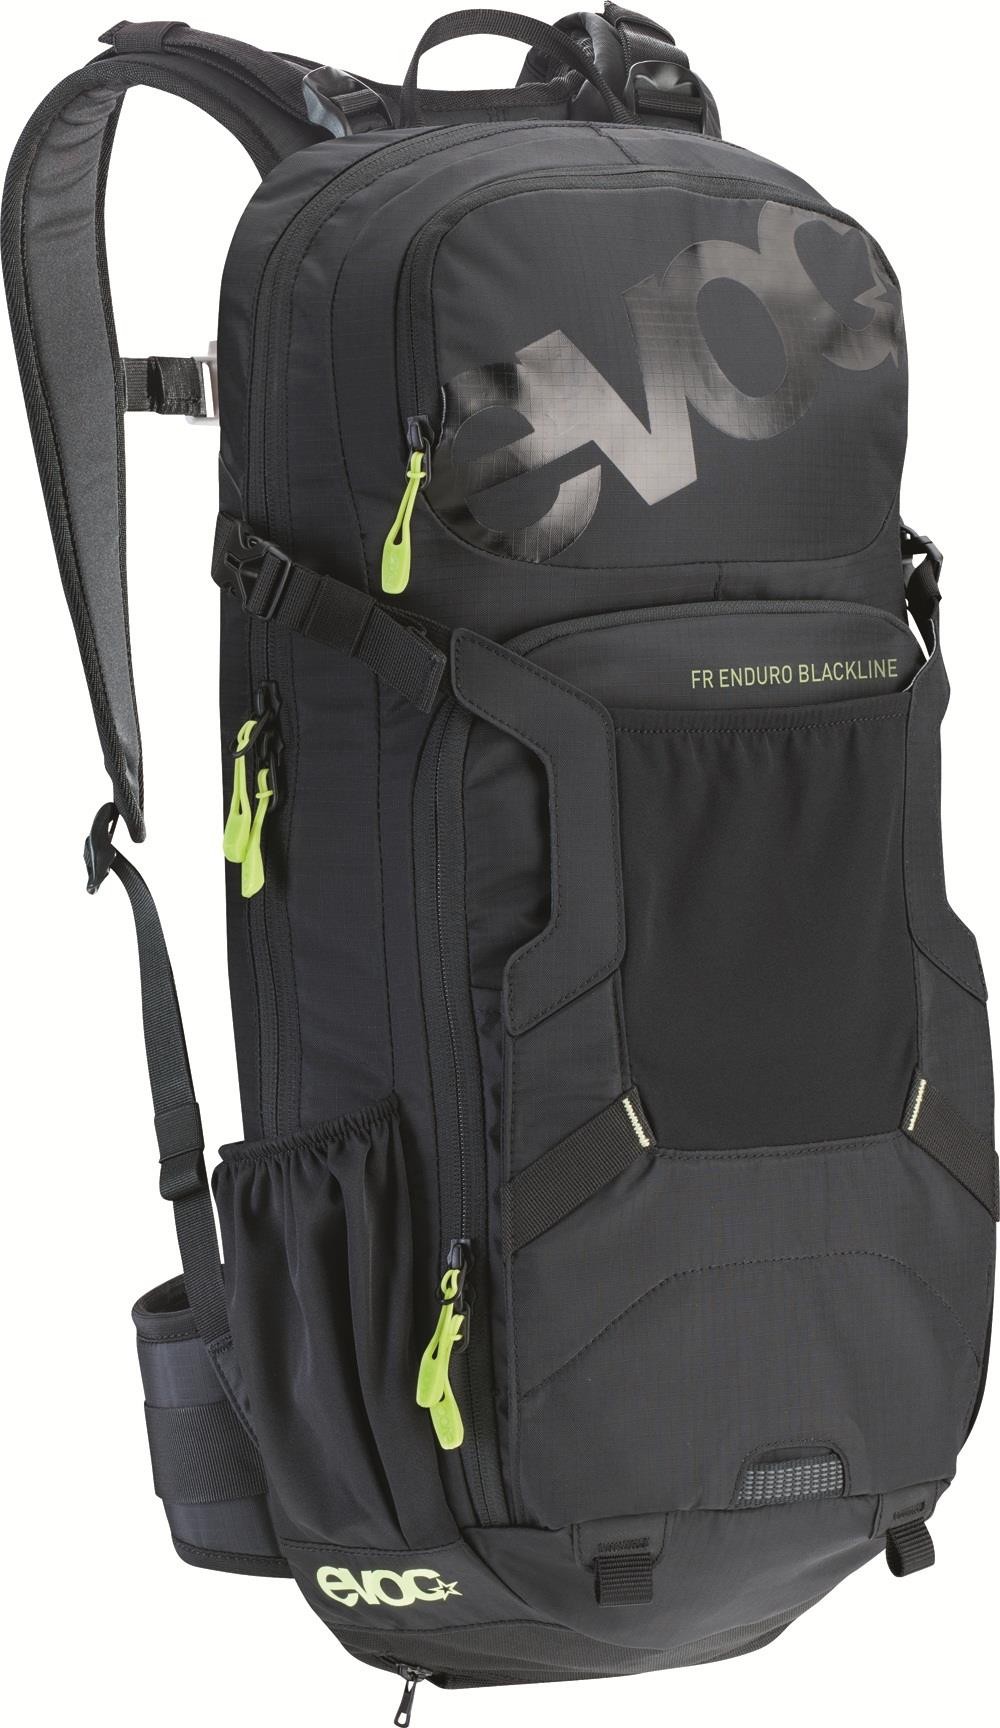 FR Enduro Blackline Protector Backpack image 0